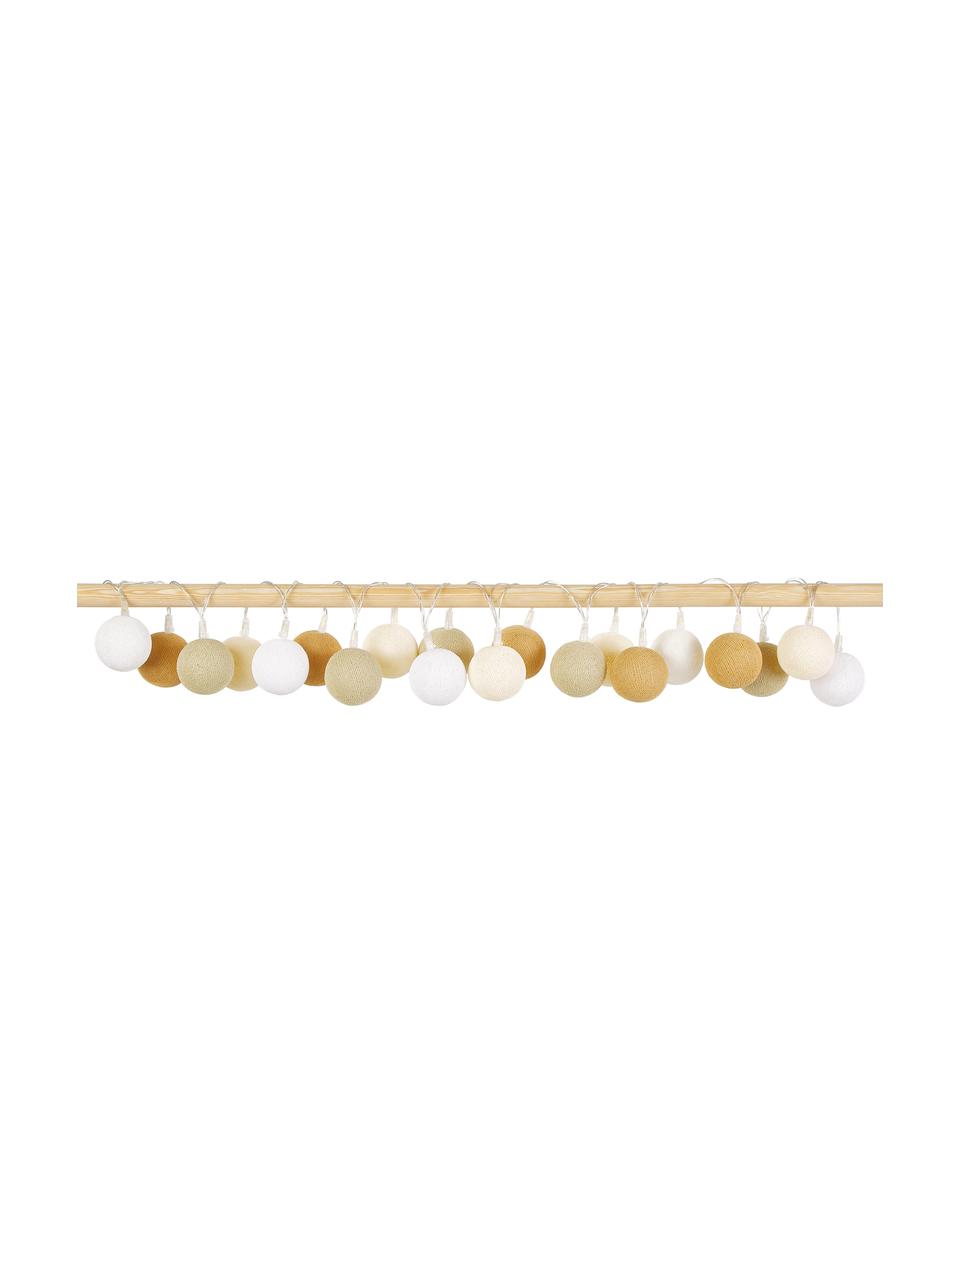 Girlanda świetlna LED Colorain, dł.  378 cm i 20 lampionów, Biały, kremowy, beżowy, musztardowy, D 378 cm